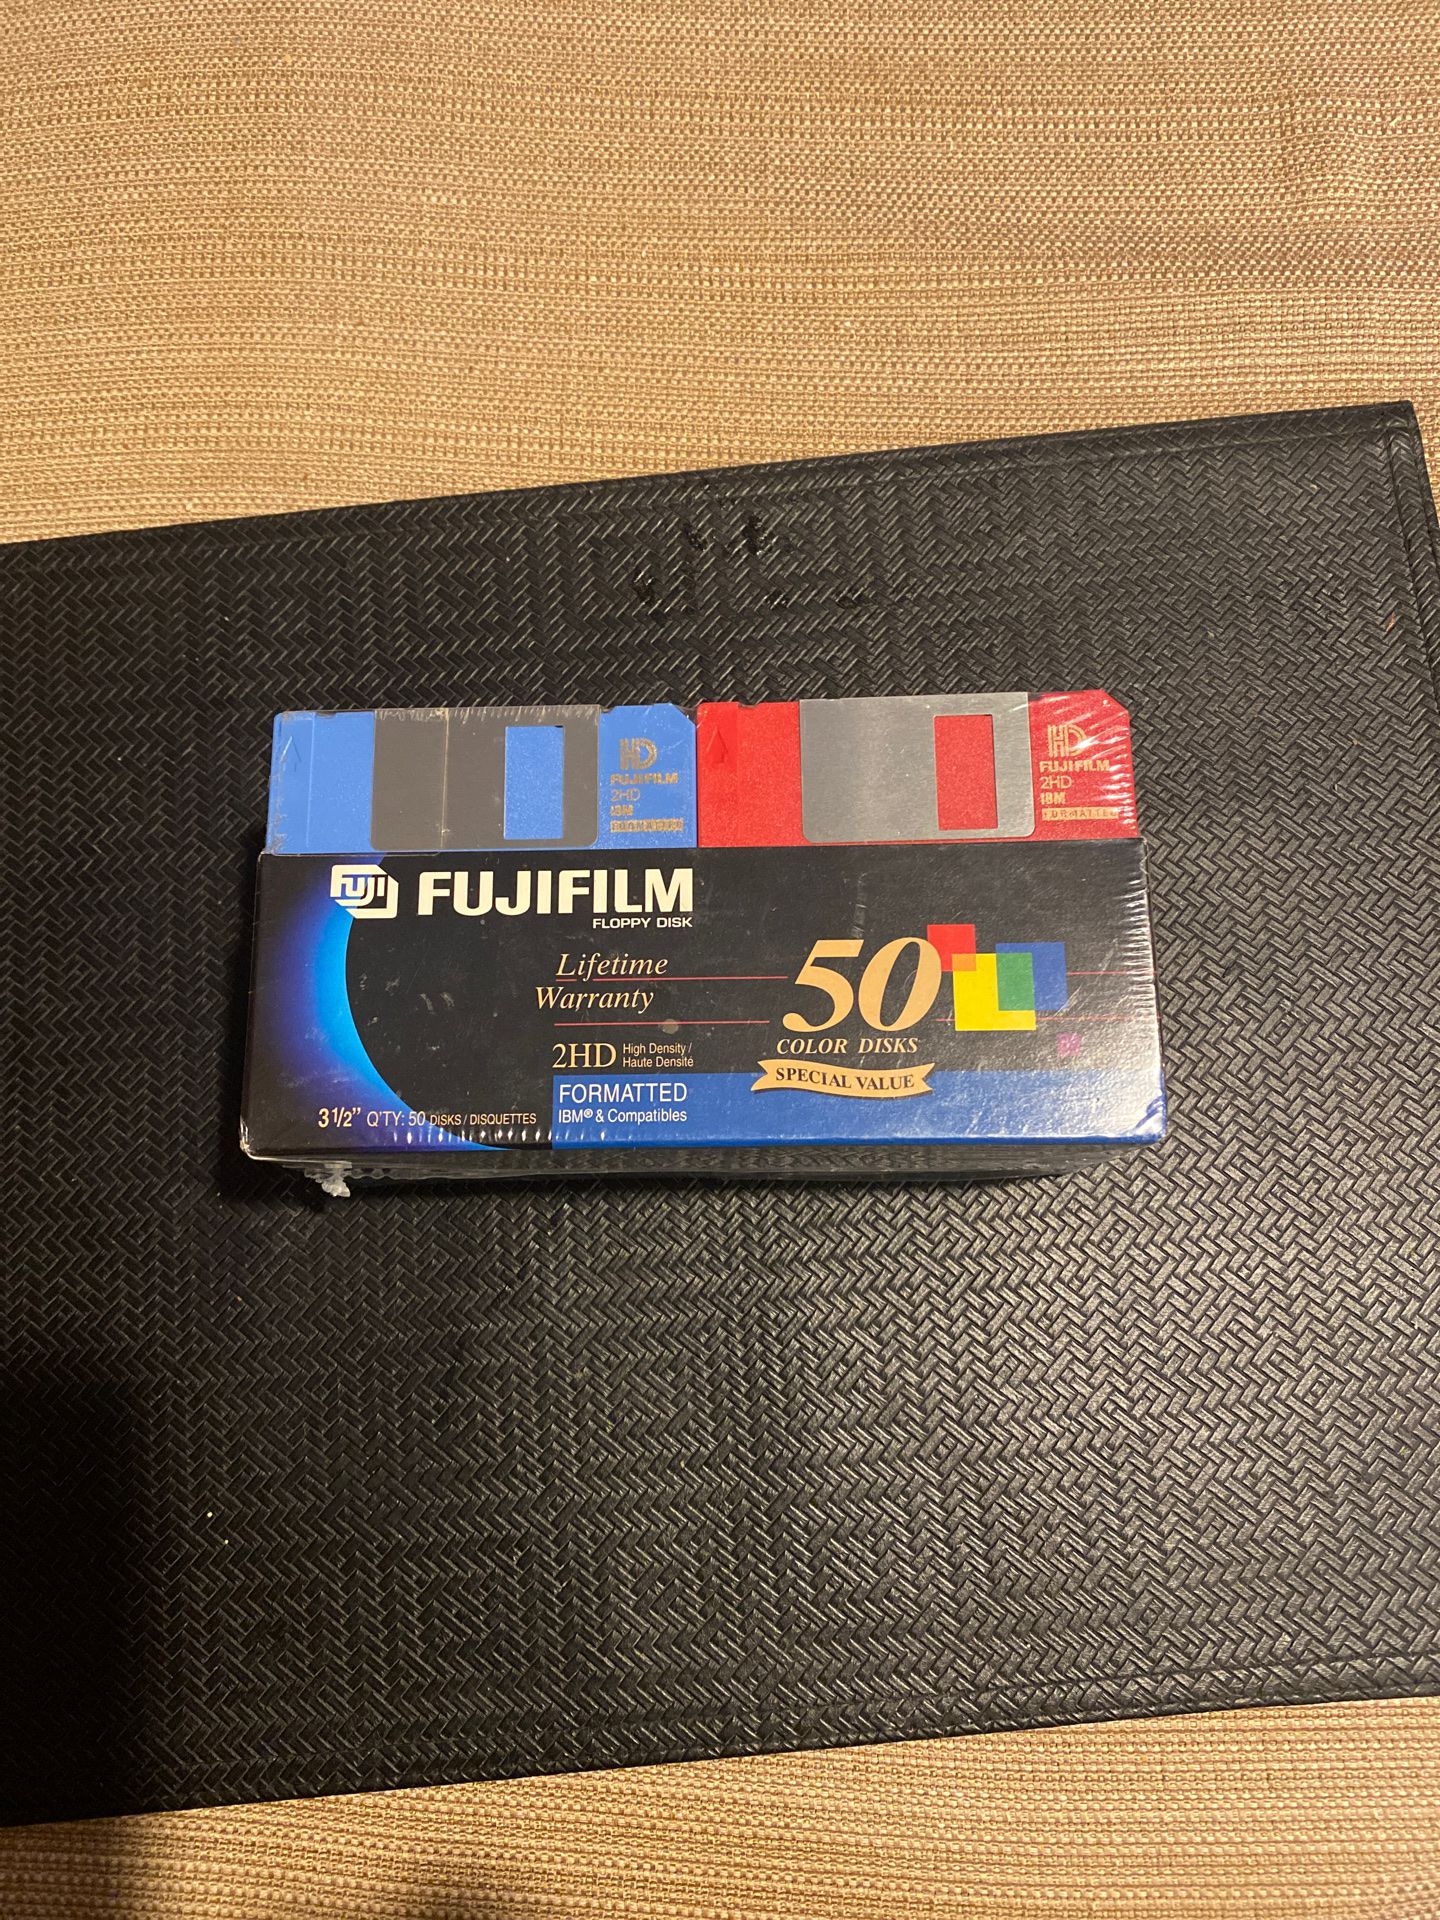 Fujifllm floppy disk